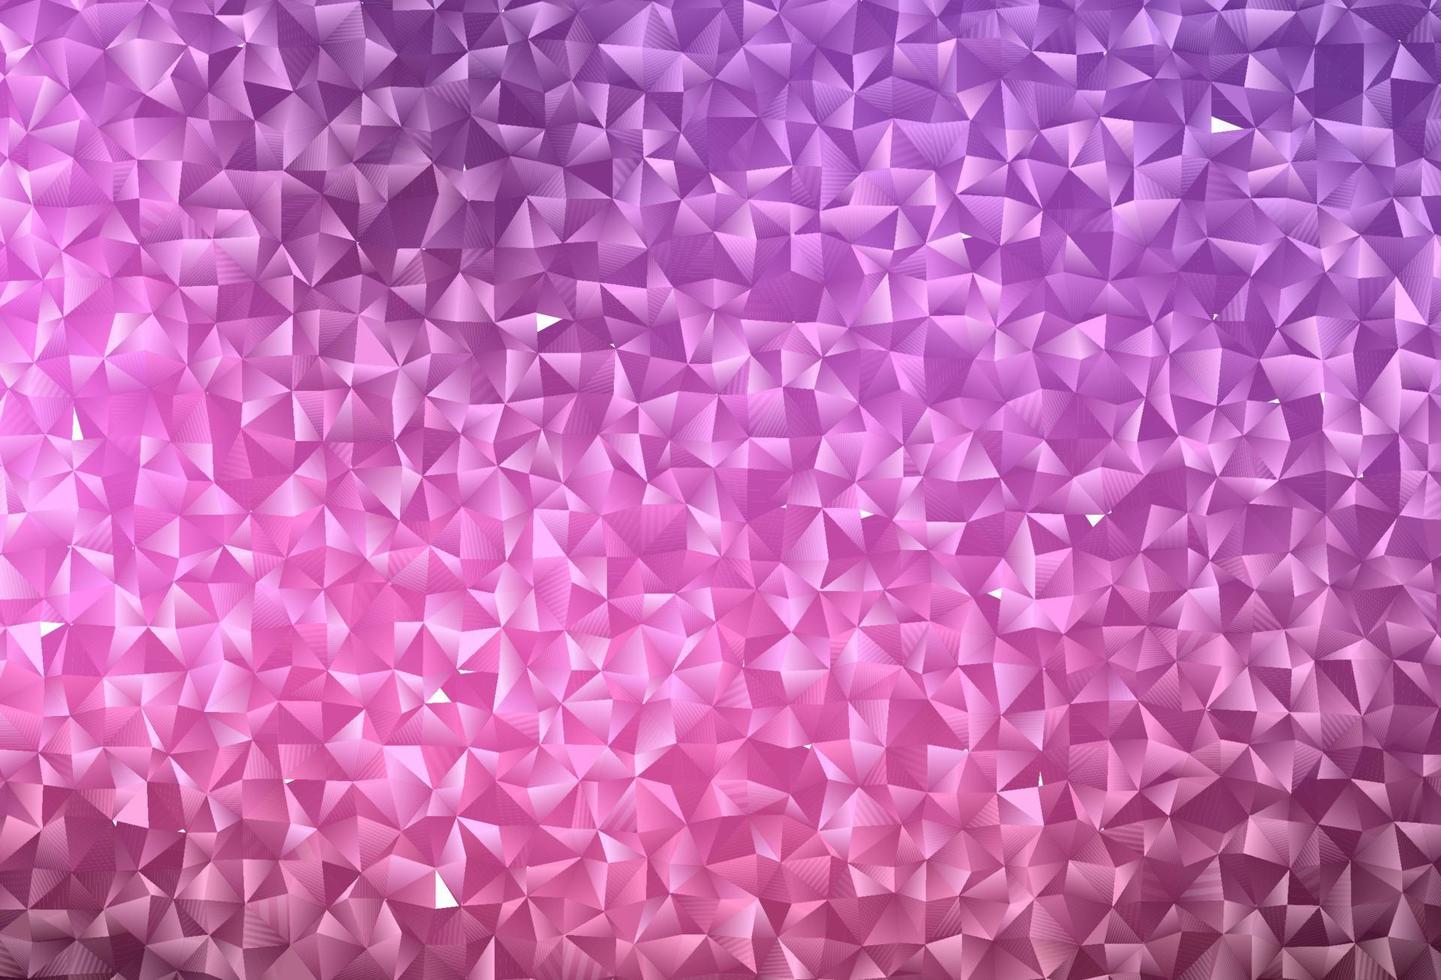 Cubierta poligonal abstracta de vector rosa oscuro.